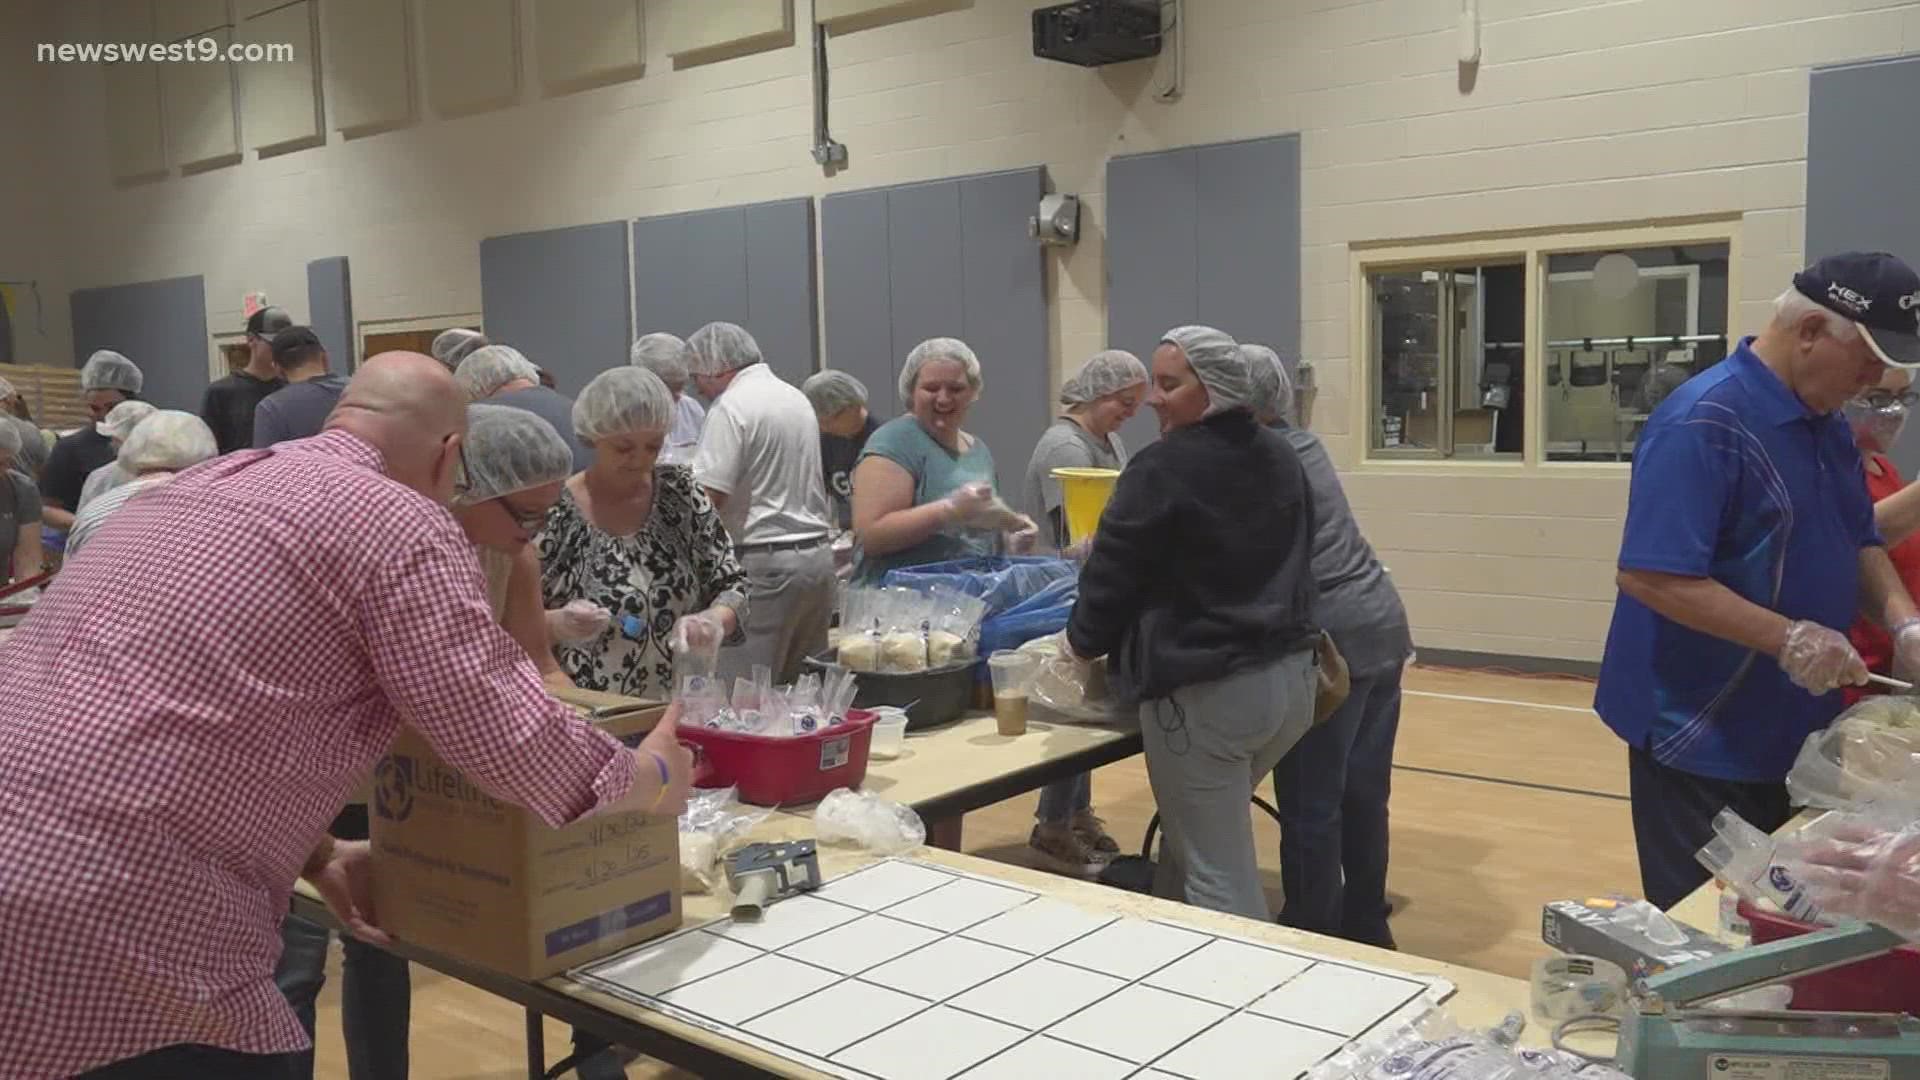 Over 800 volunteers helped pack meals for people in Ukraine.